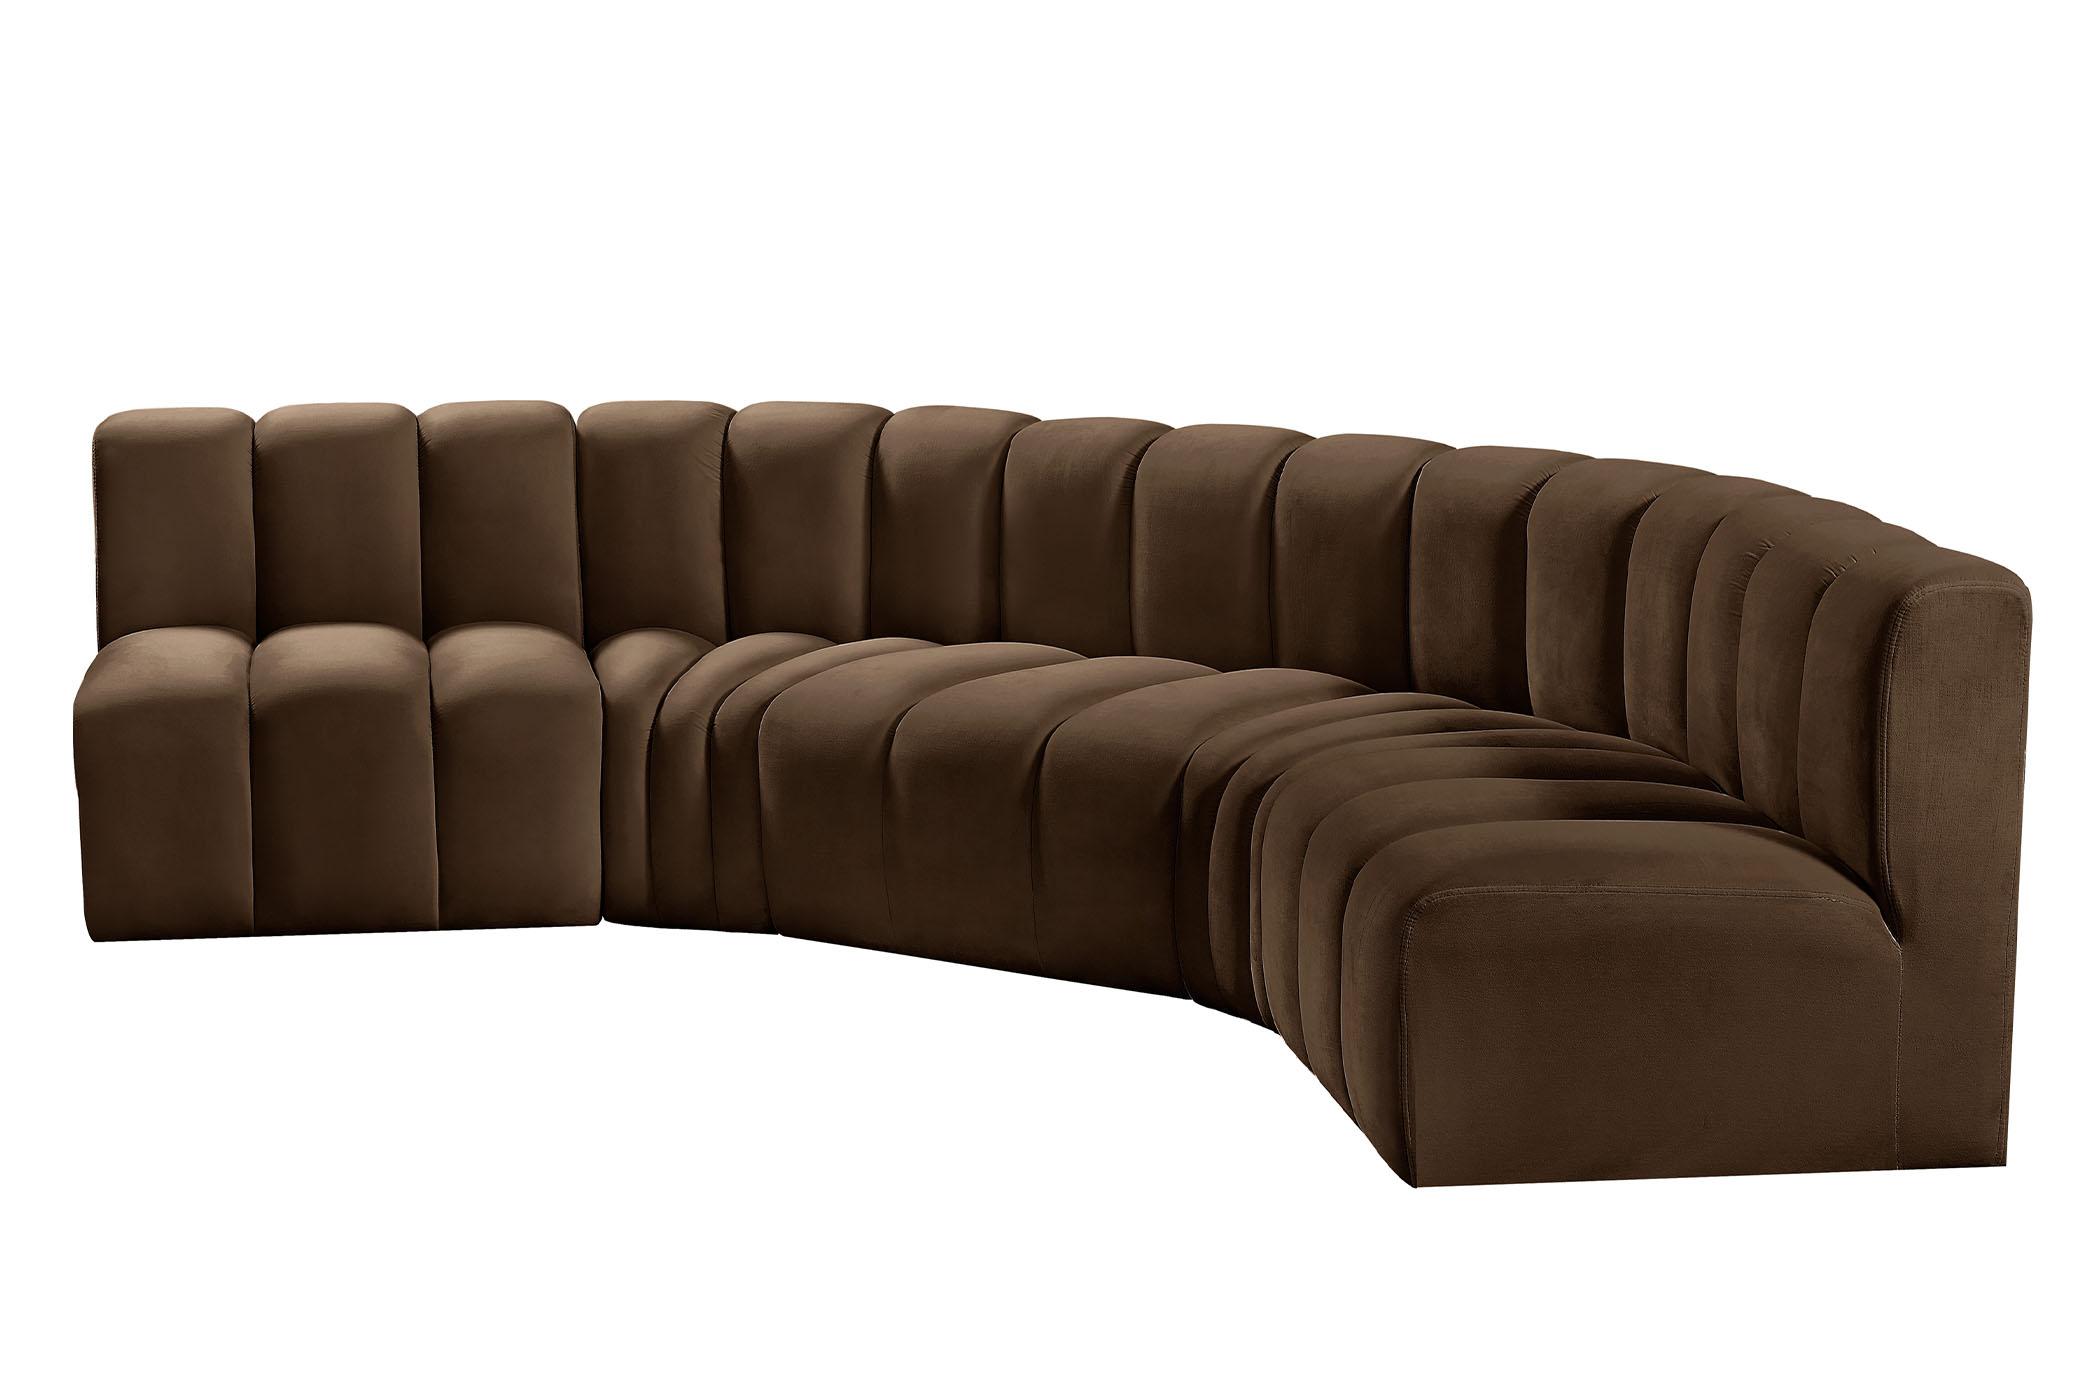 

    
103Brown-S5A Meridian Furniture Modular Sectional Sofa
